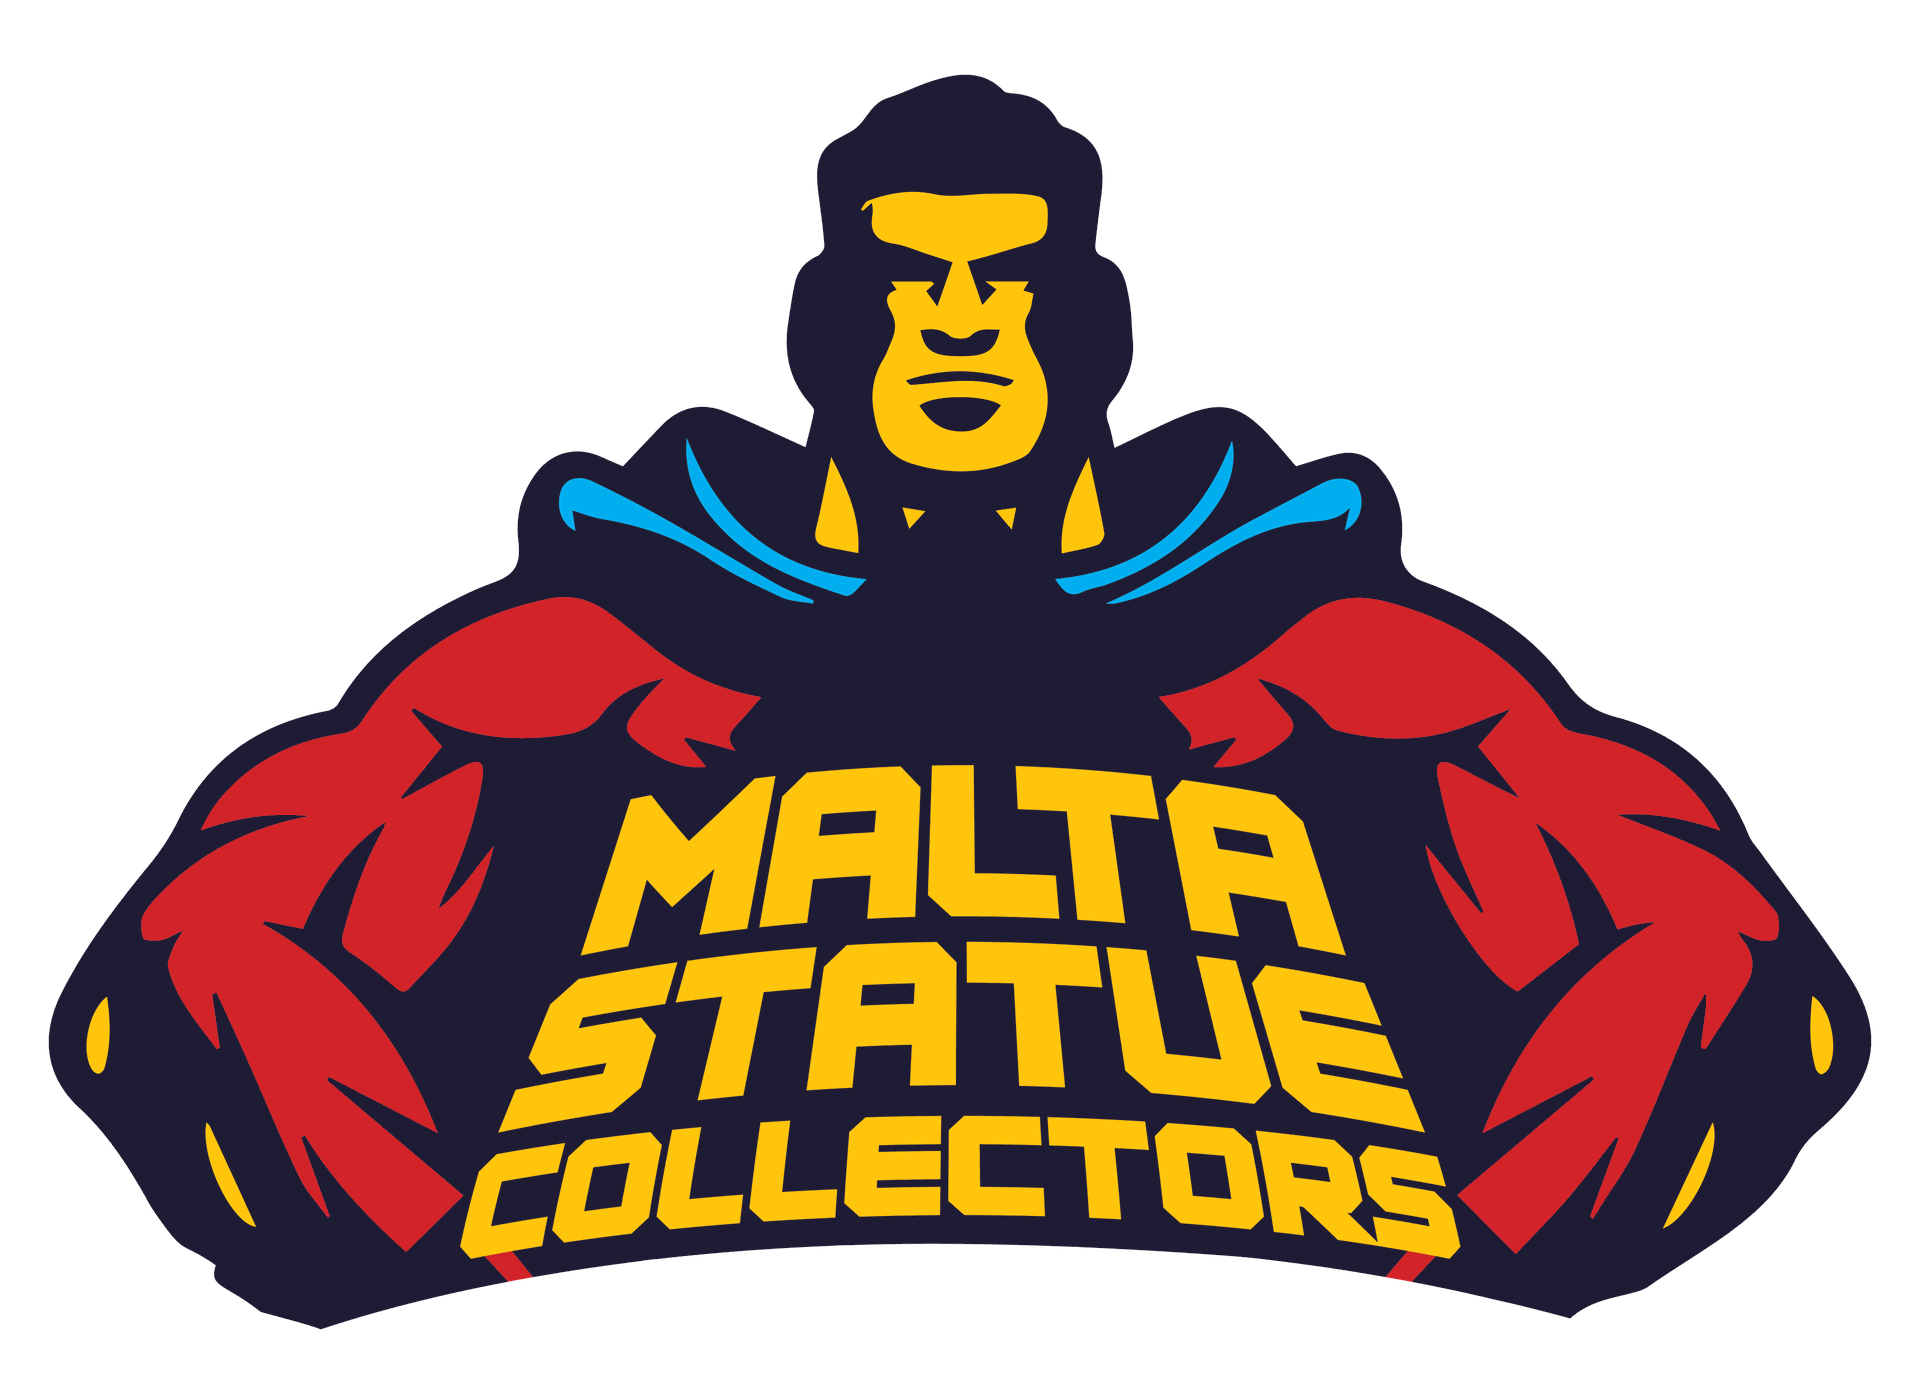 Malta Statue Collectors